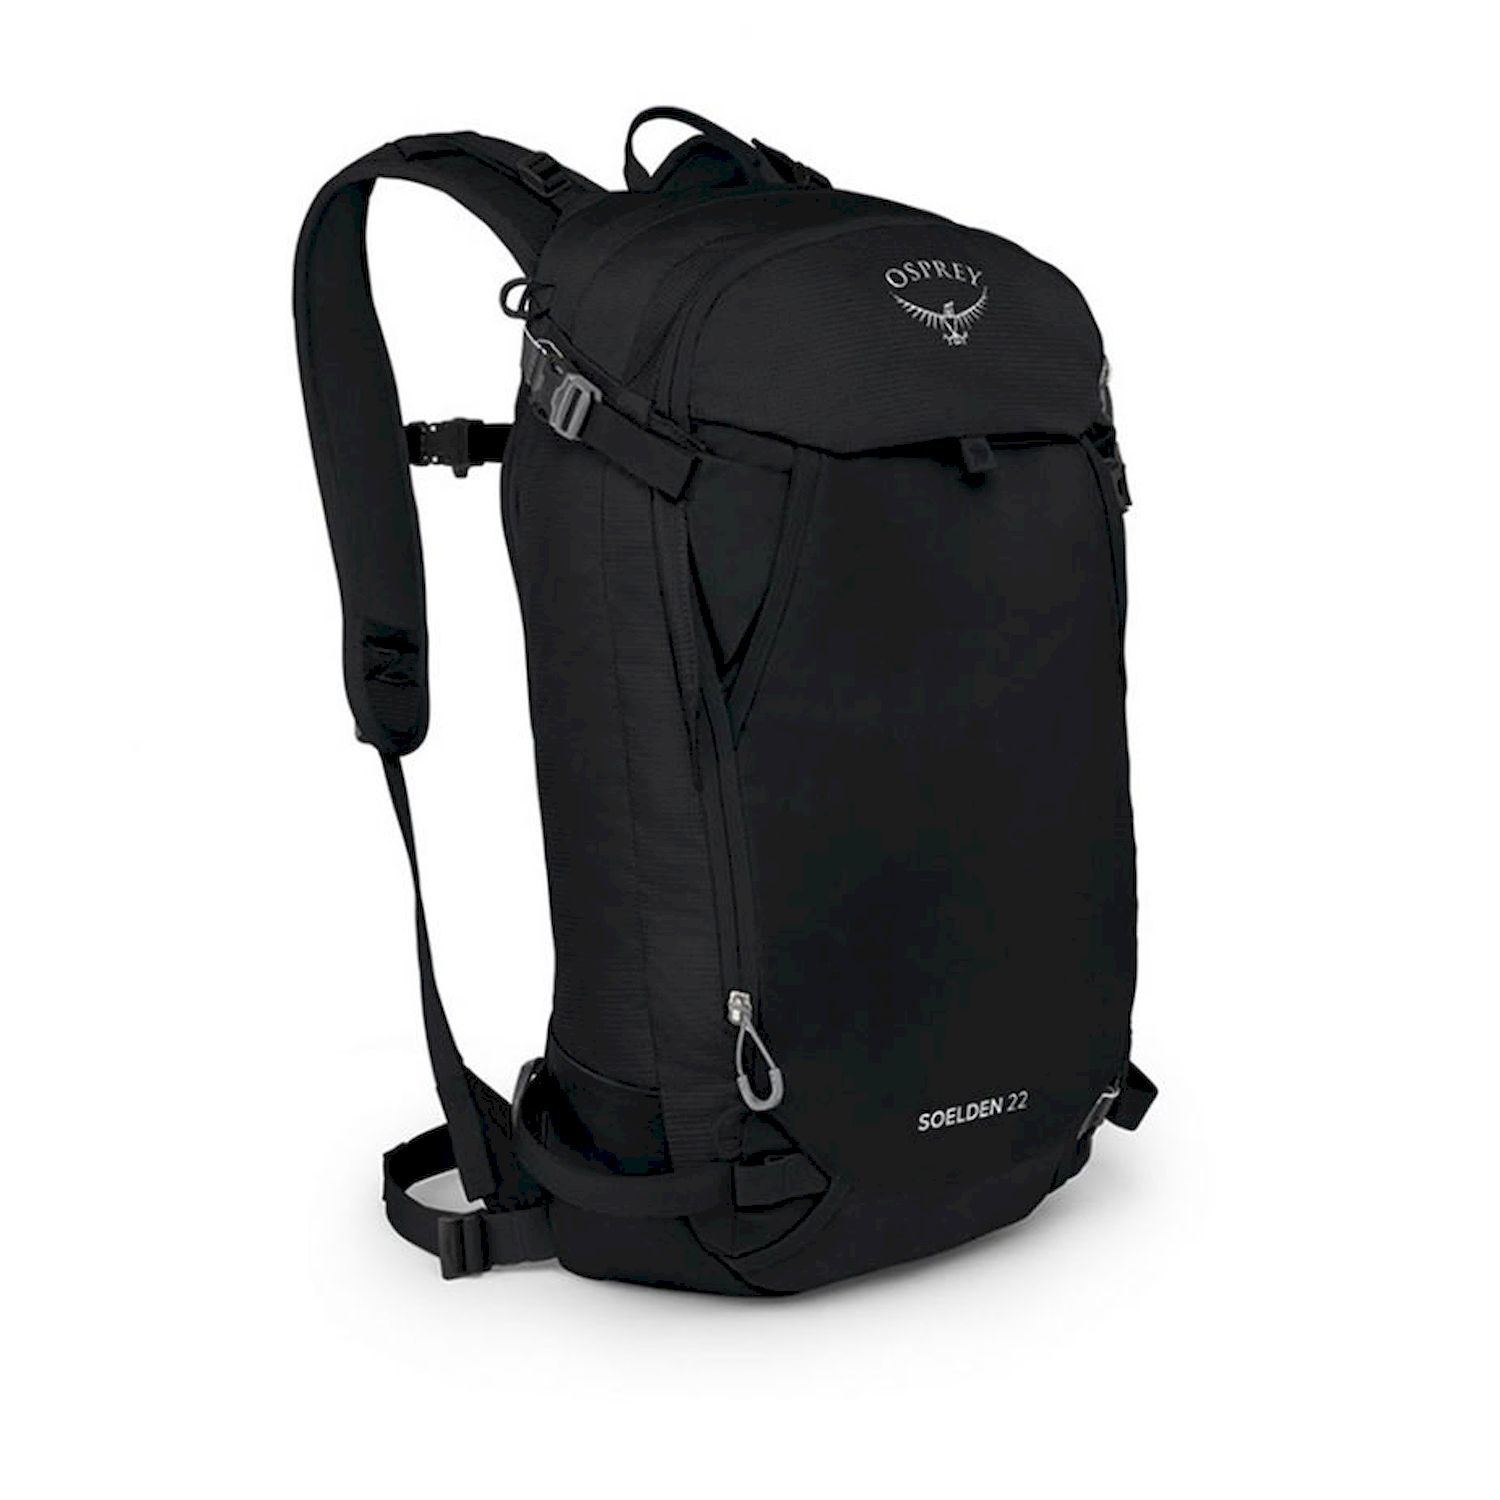 Osprey Soelden 22 - Ski backpack - Men's